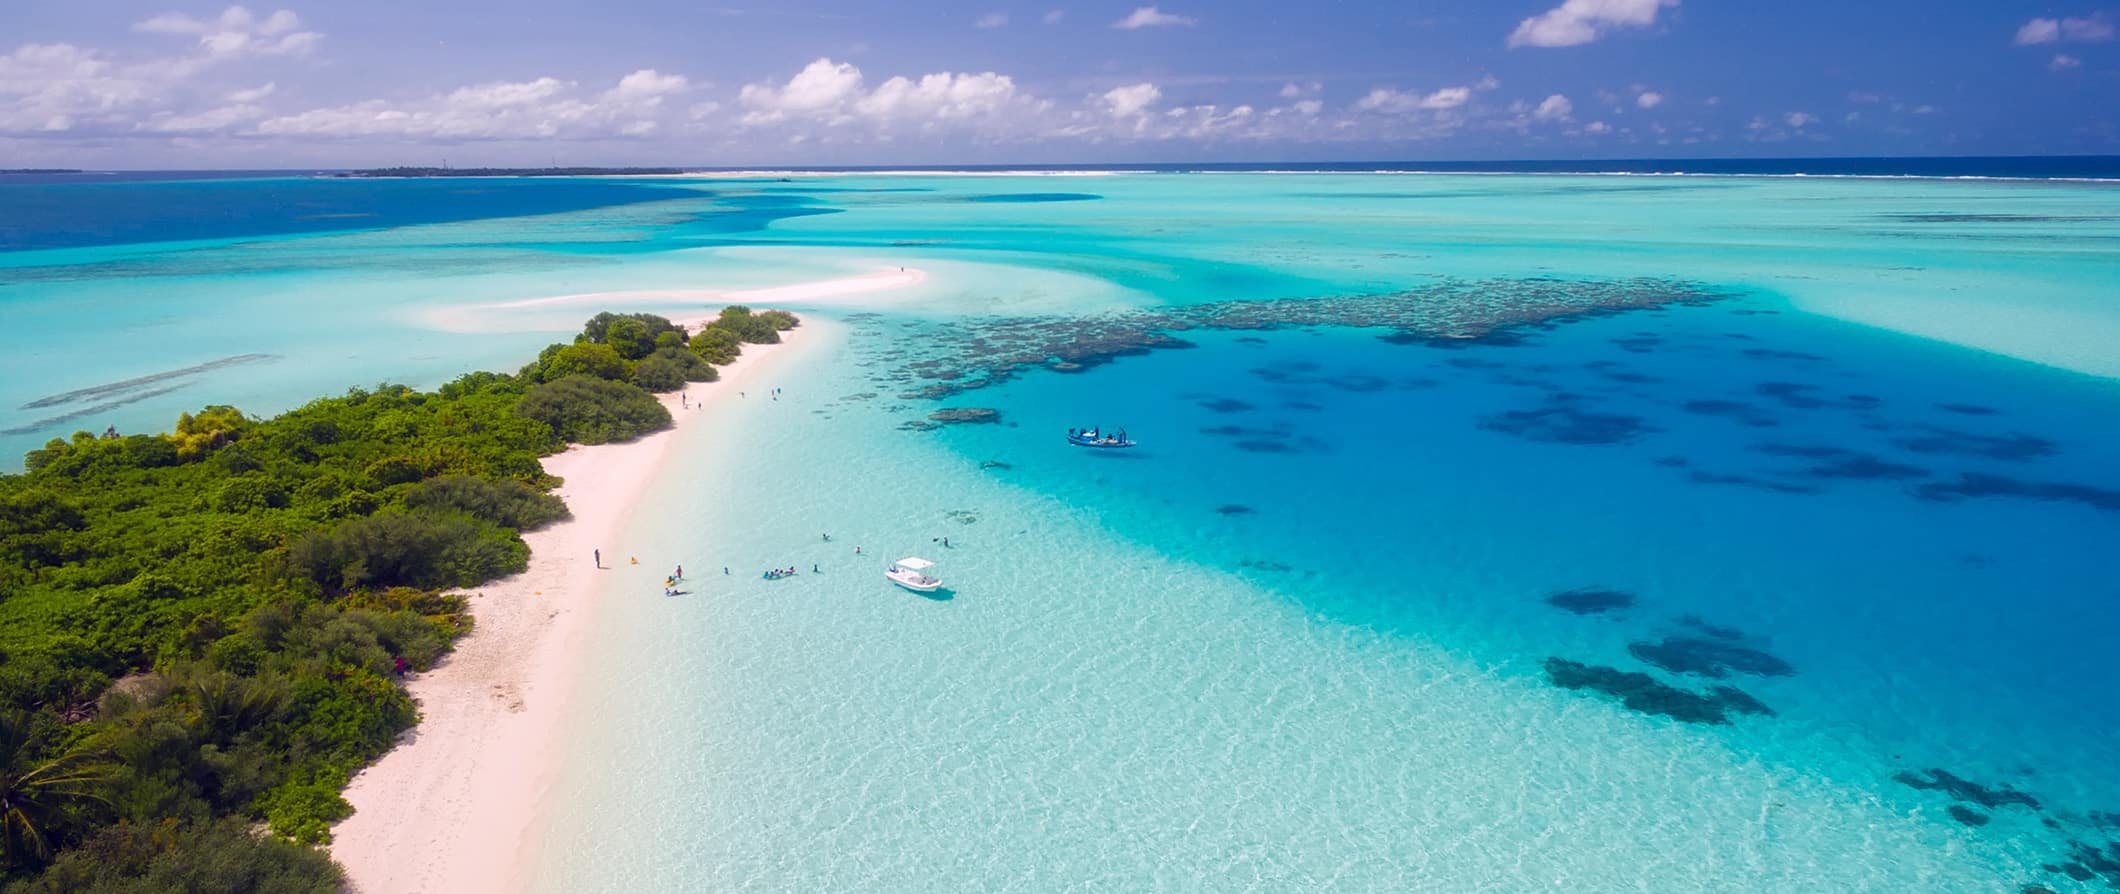 Águas transparentes deslumbrantes do mar tropical nas Maldivas ao longo de uma praia estreita com areia branca